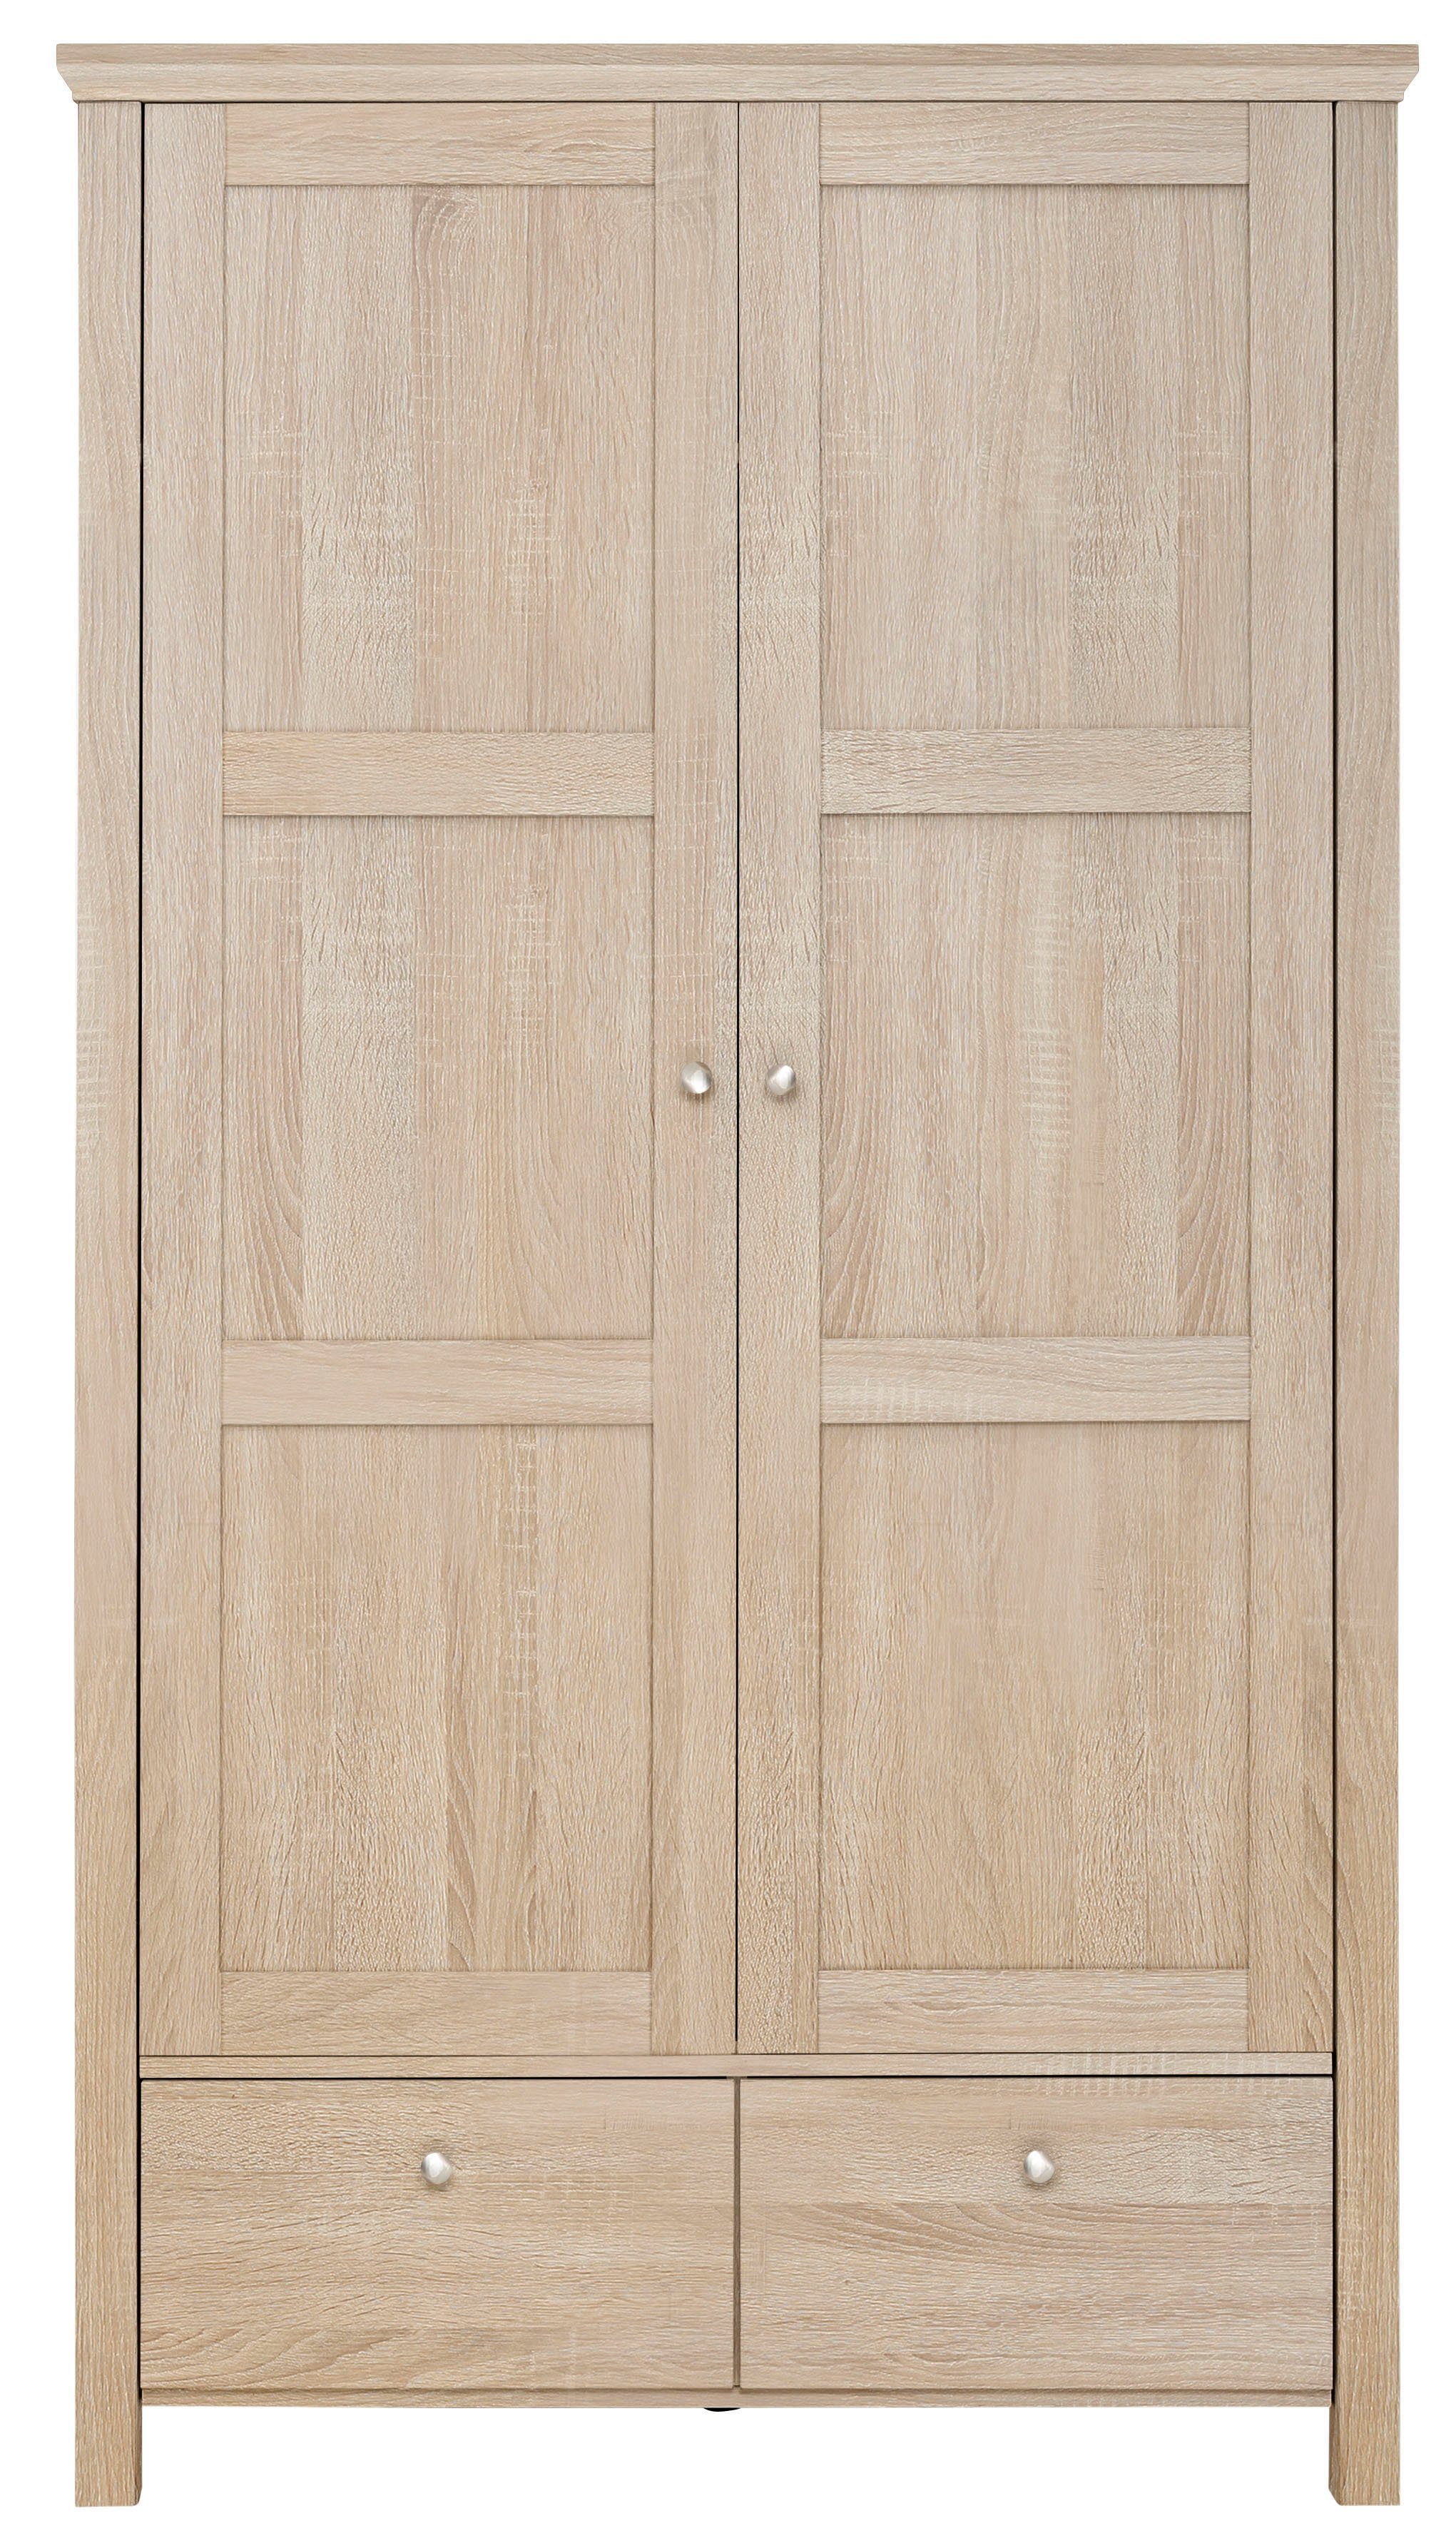 Home affaire Kleiderschrank »Margaret« mit Einlegeboden und Kleiderstange hinter die Türen, 2 Schubkasten, in verschiedenen Farbvarianten erhältlich, Höhe 180 cm-kaufen